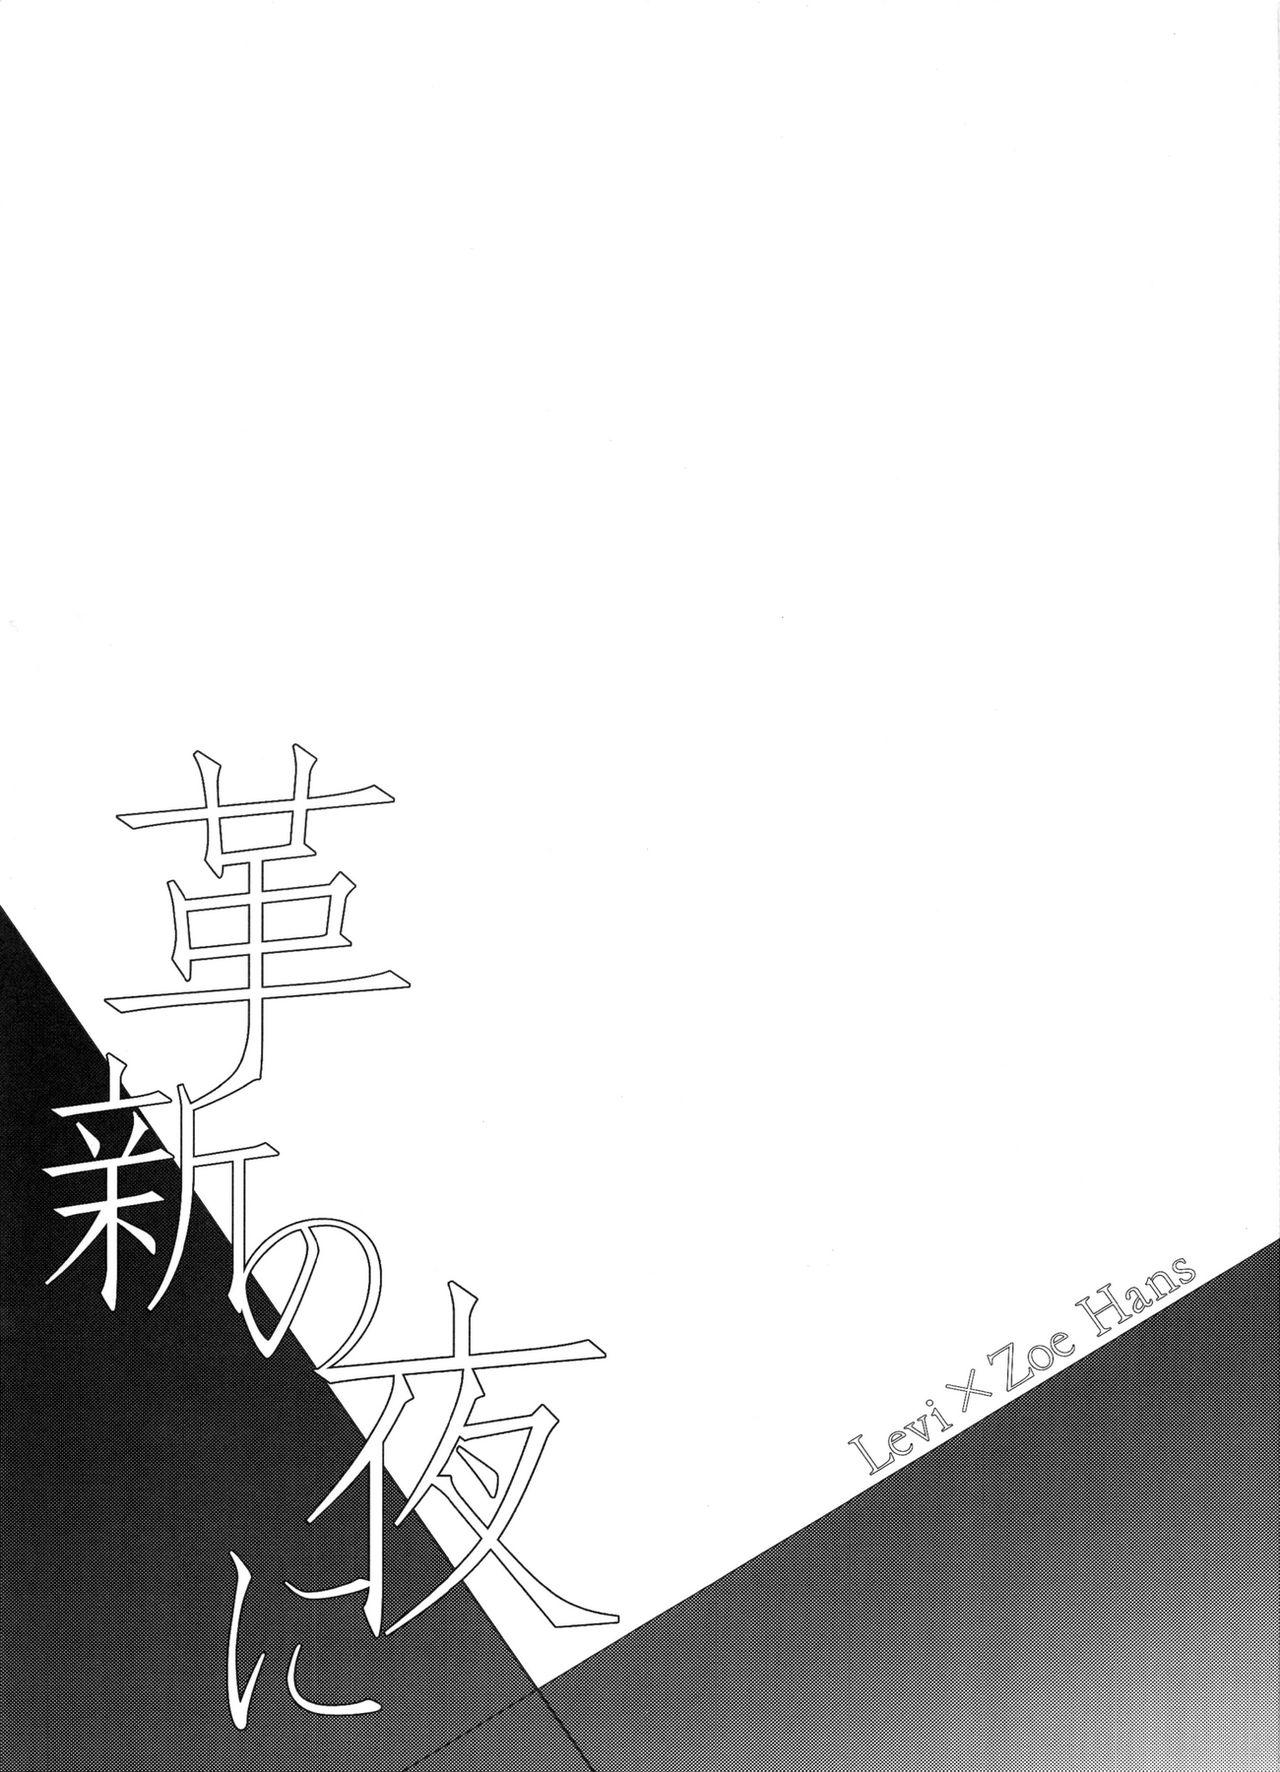 Small Tits Kakushin no Yoru ni - Shingeki no kyojin 18 Year Old - Page 3